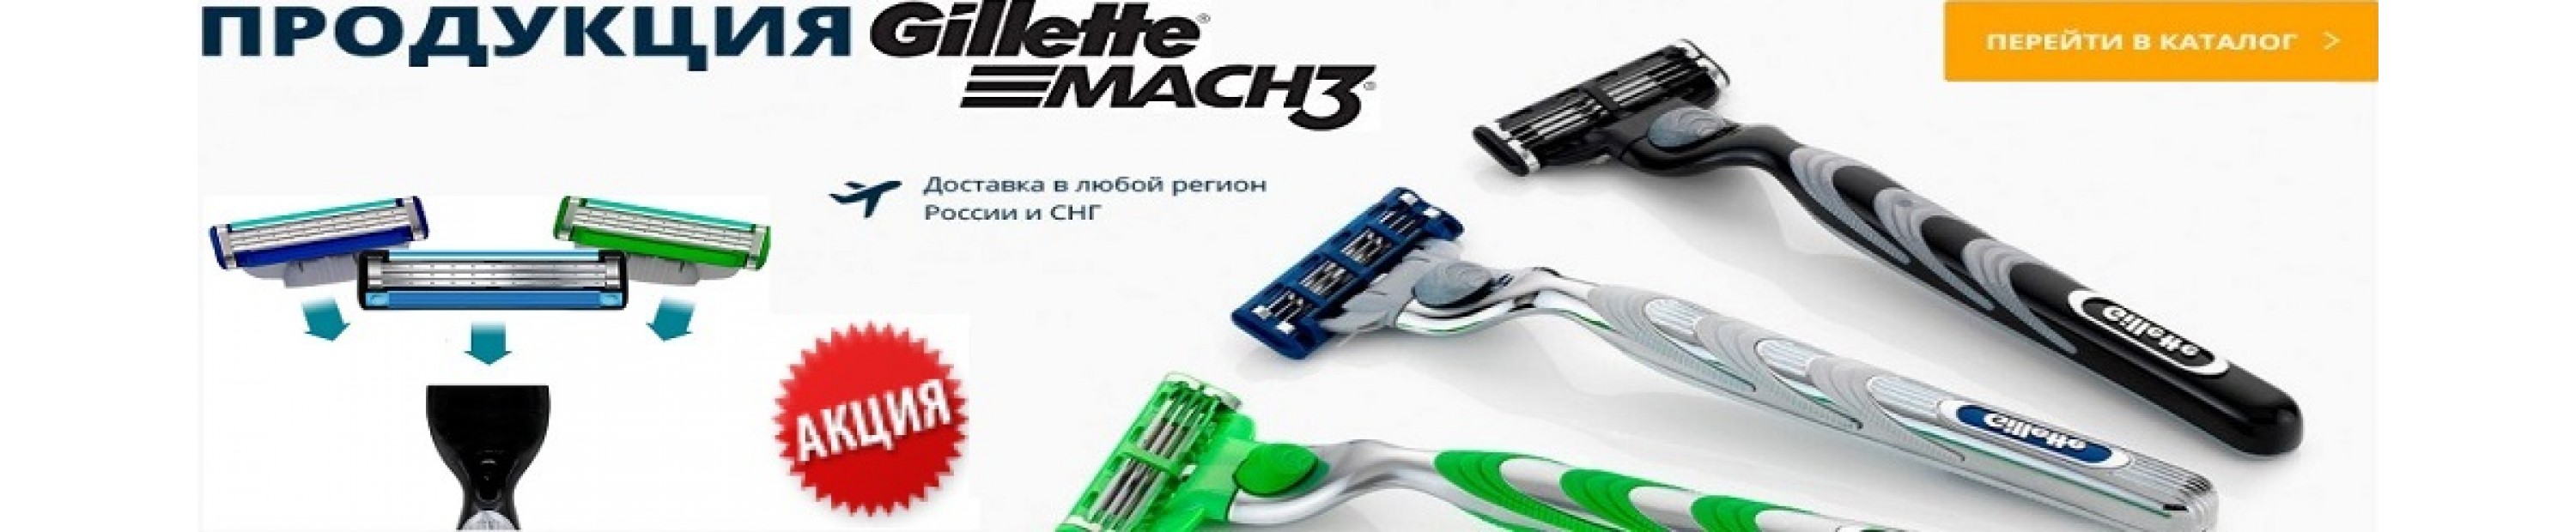 Gillette Mach3 оптом